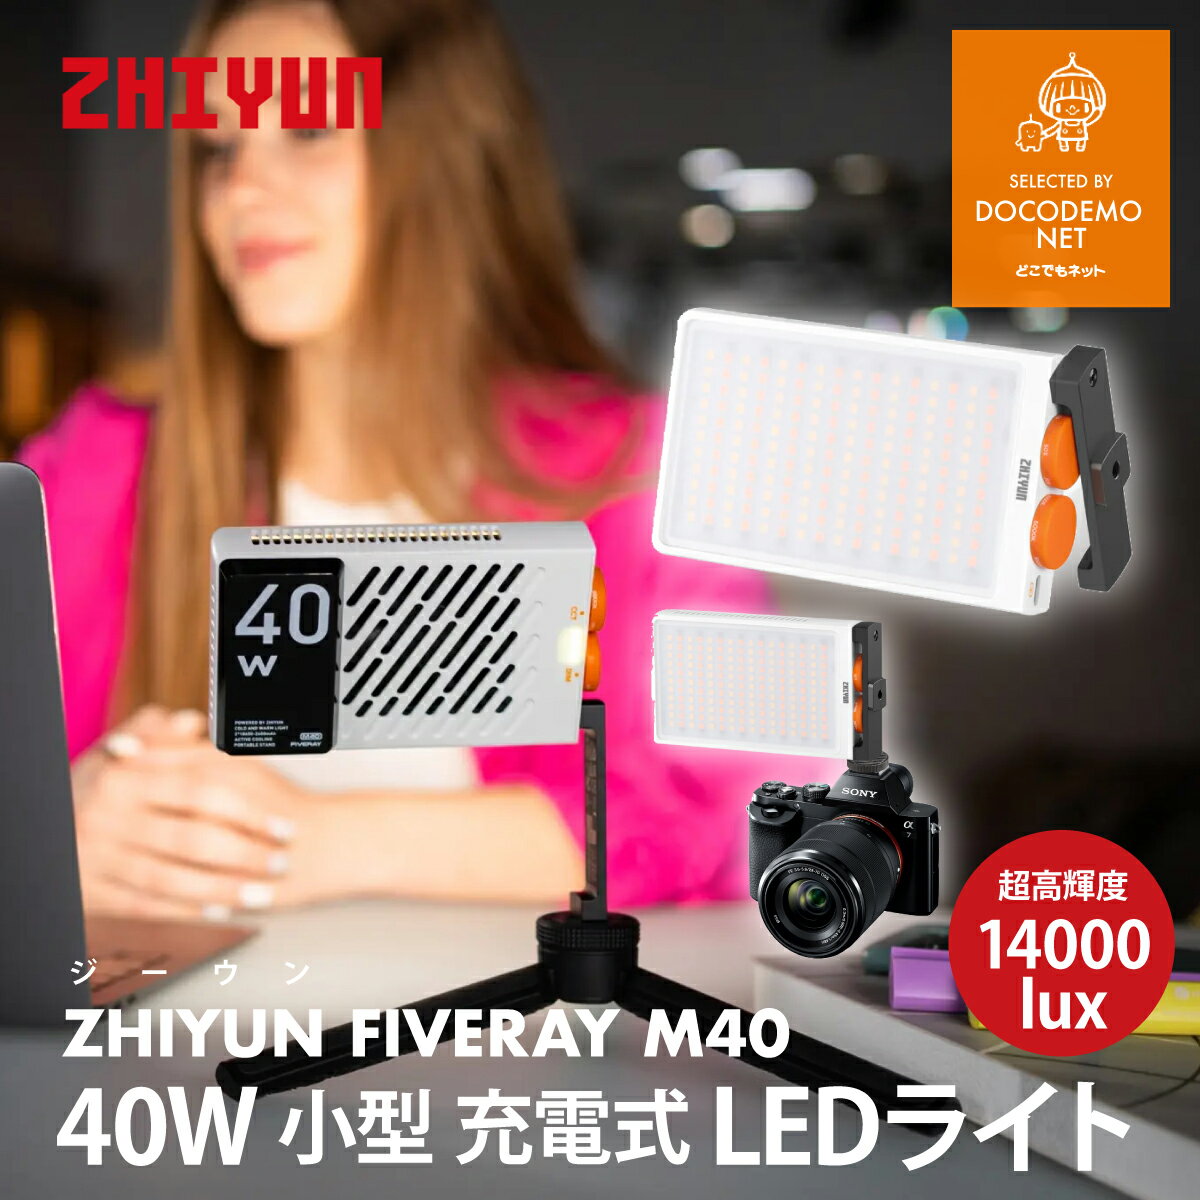 ZHIYUN FIVERAY M40 40W ビデオライト LED 撮影ライト 小型 充電式 照明ライト 卓上 手持ちライト 14000LUX 2700K-6200K CRI96+ 光調整 自撮り撮影 YouTube 生放送 ビデオ録画 プロ仕様